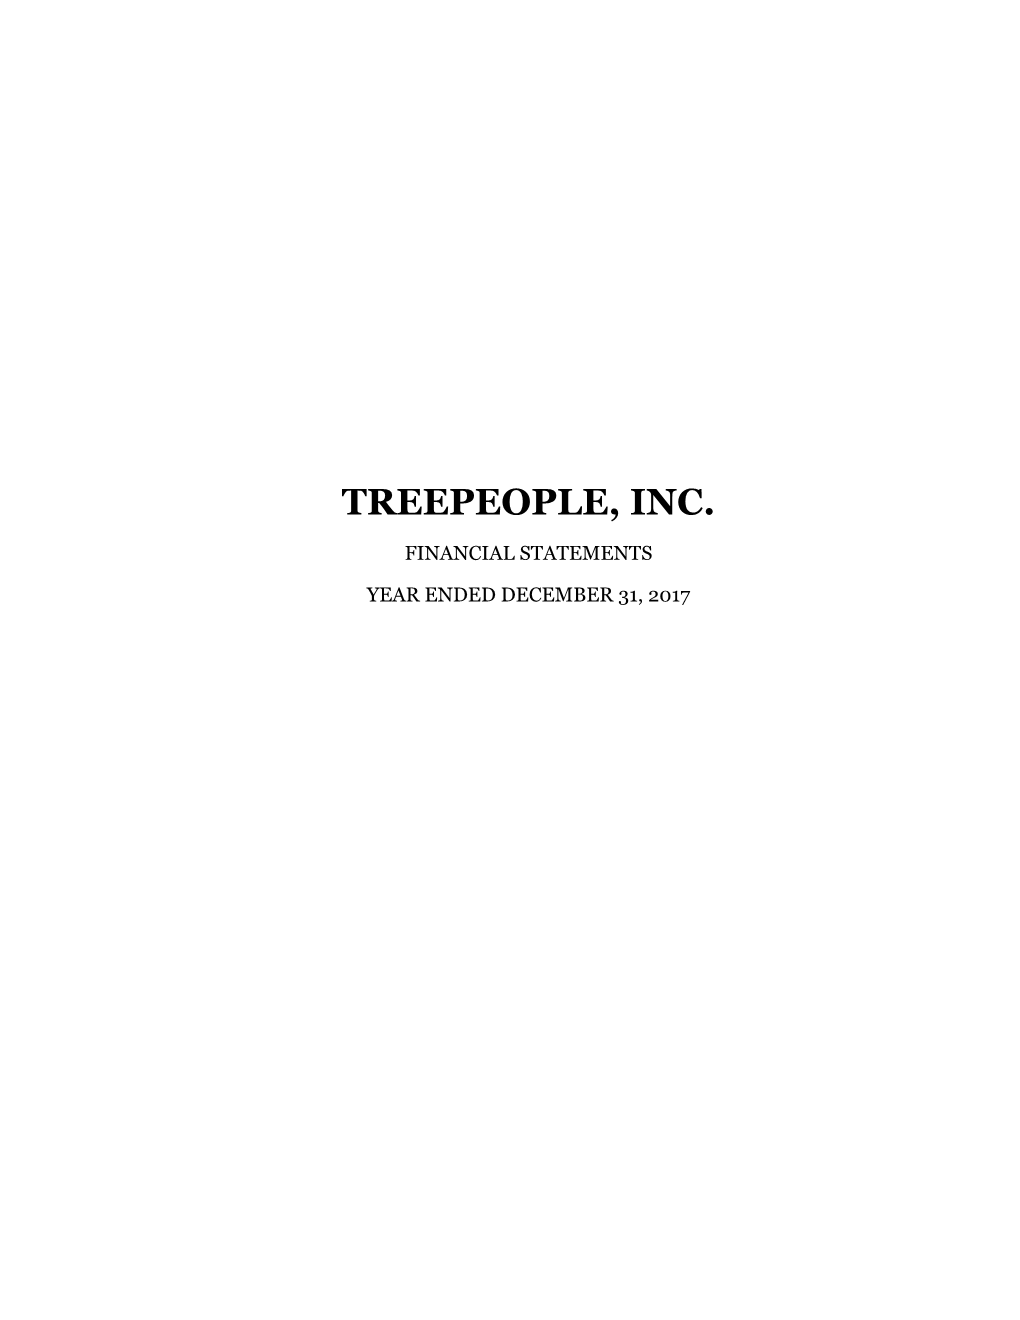 Treepeople, Inc